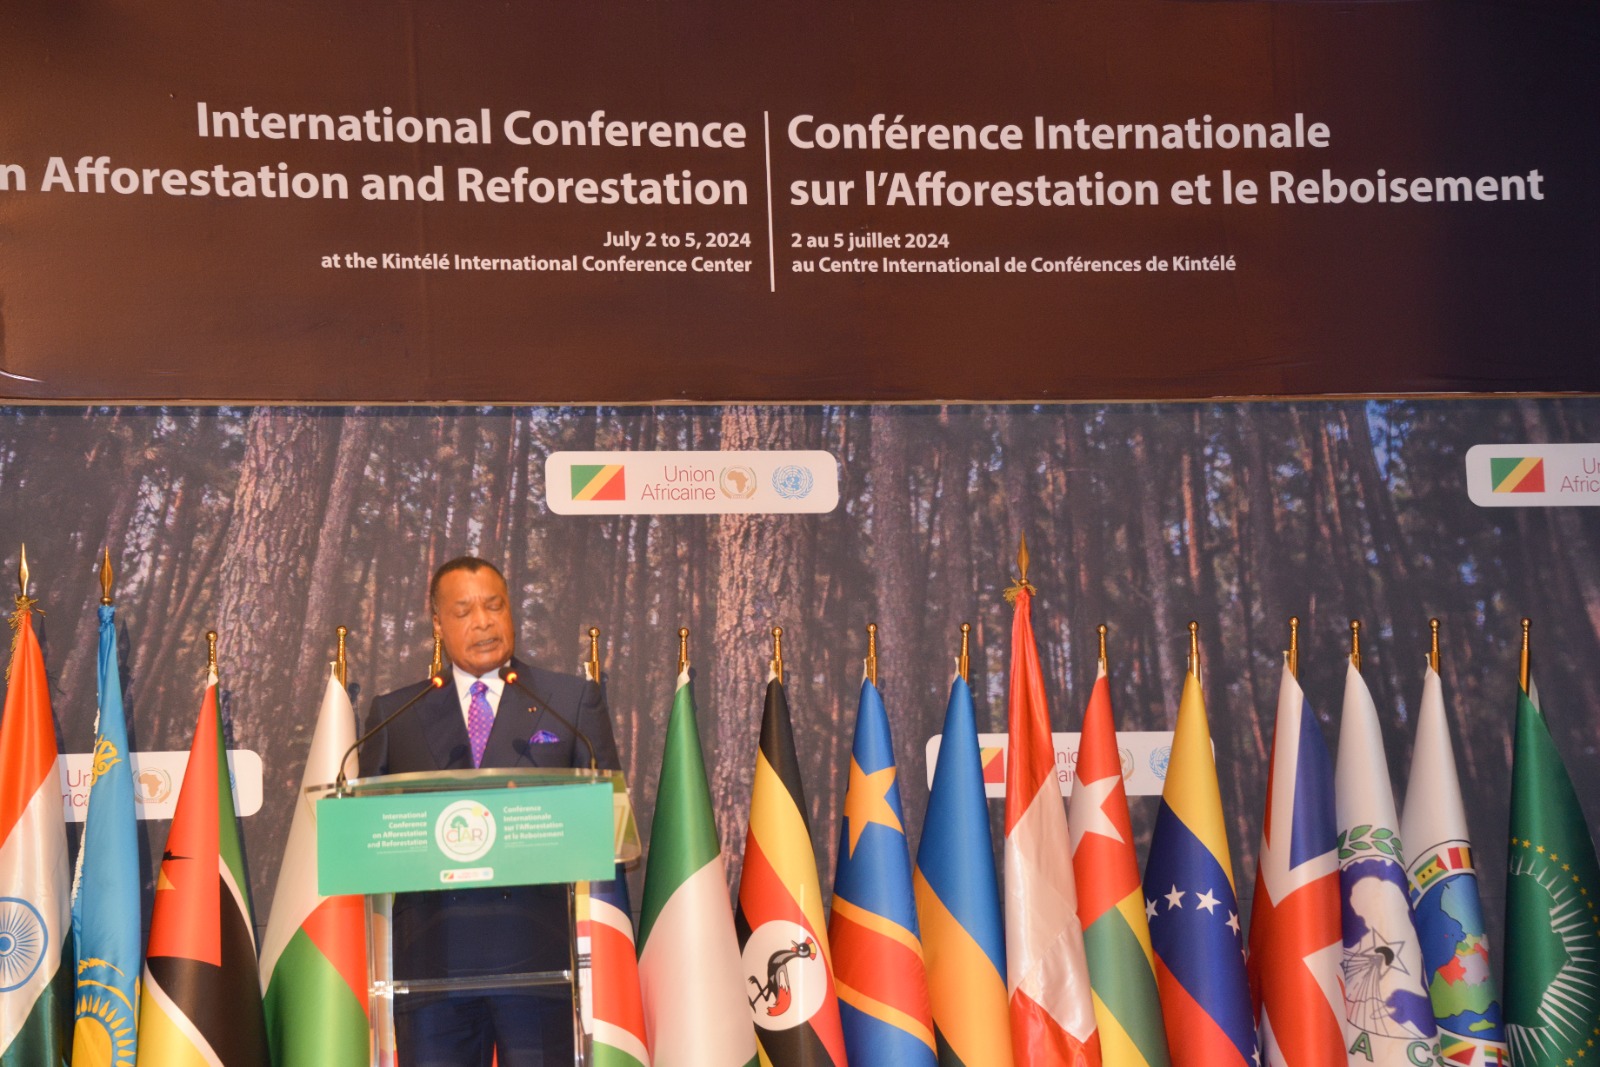 Conférence sur l’afforestation : l’appel de Denis Sassou-N’Guesso à l’action et à l’optimisme face à l’urgence climatique